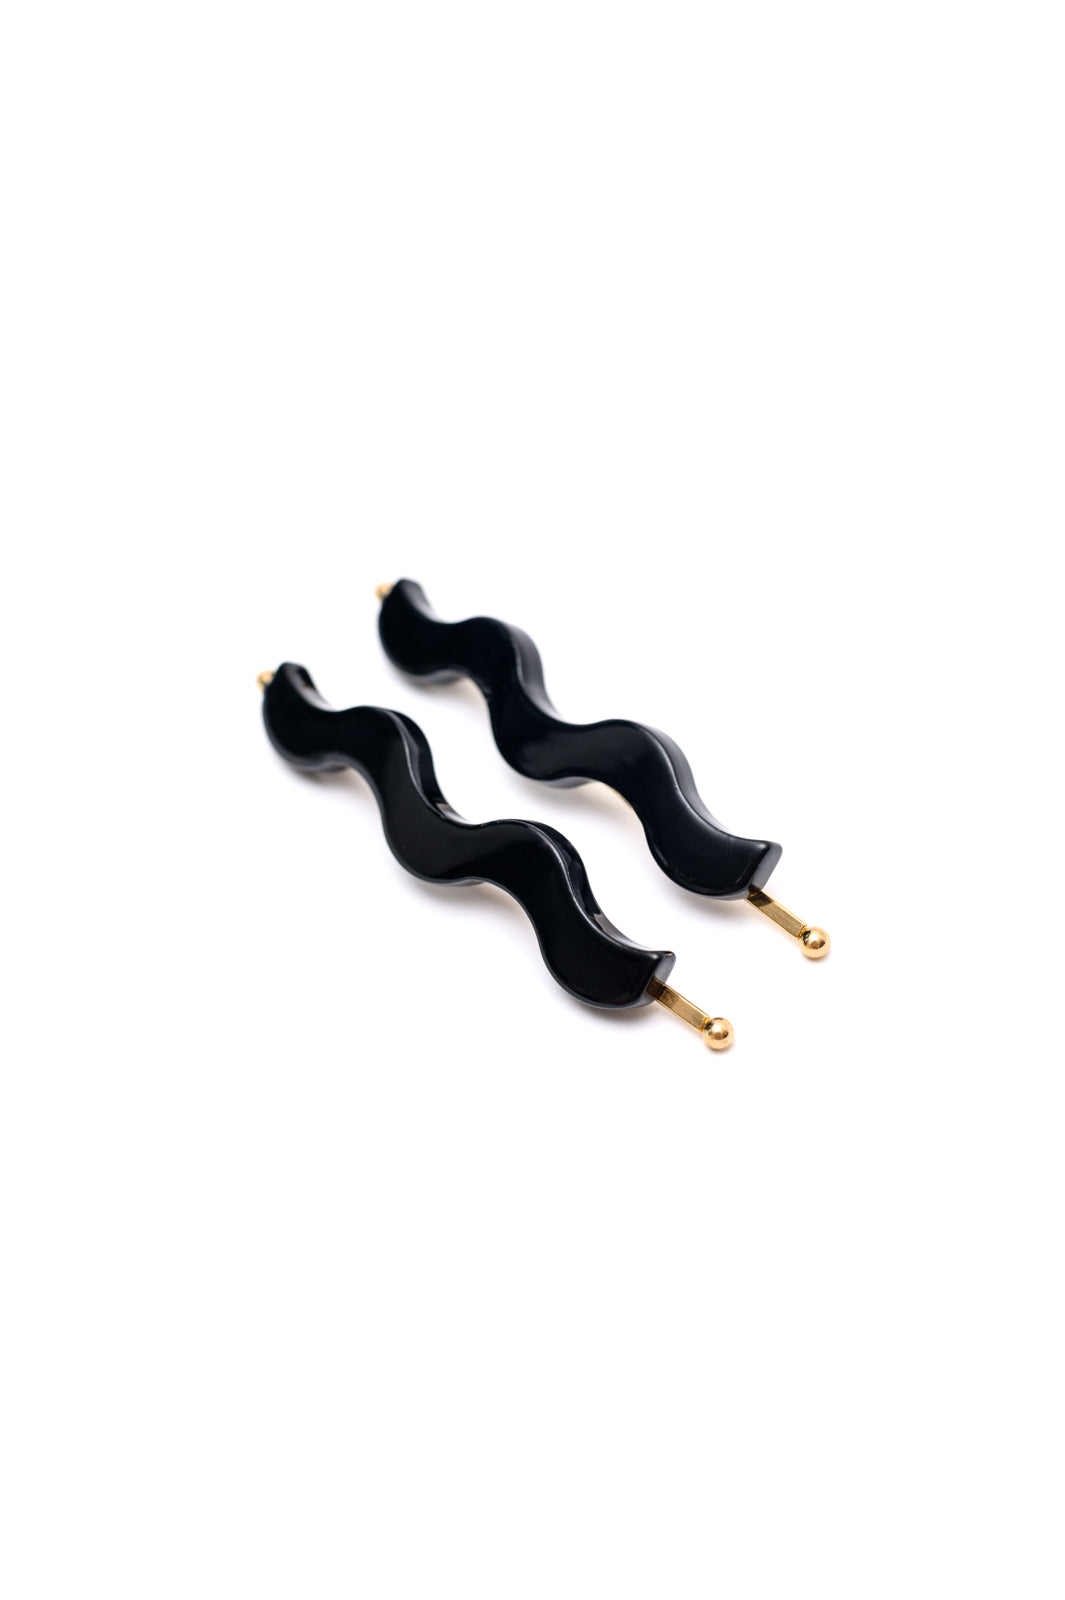 Sleek Waves Hair Clip in Black - WEBSITE EXCLUSIVE